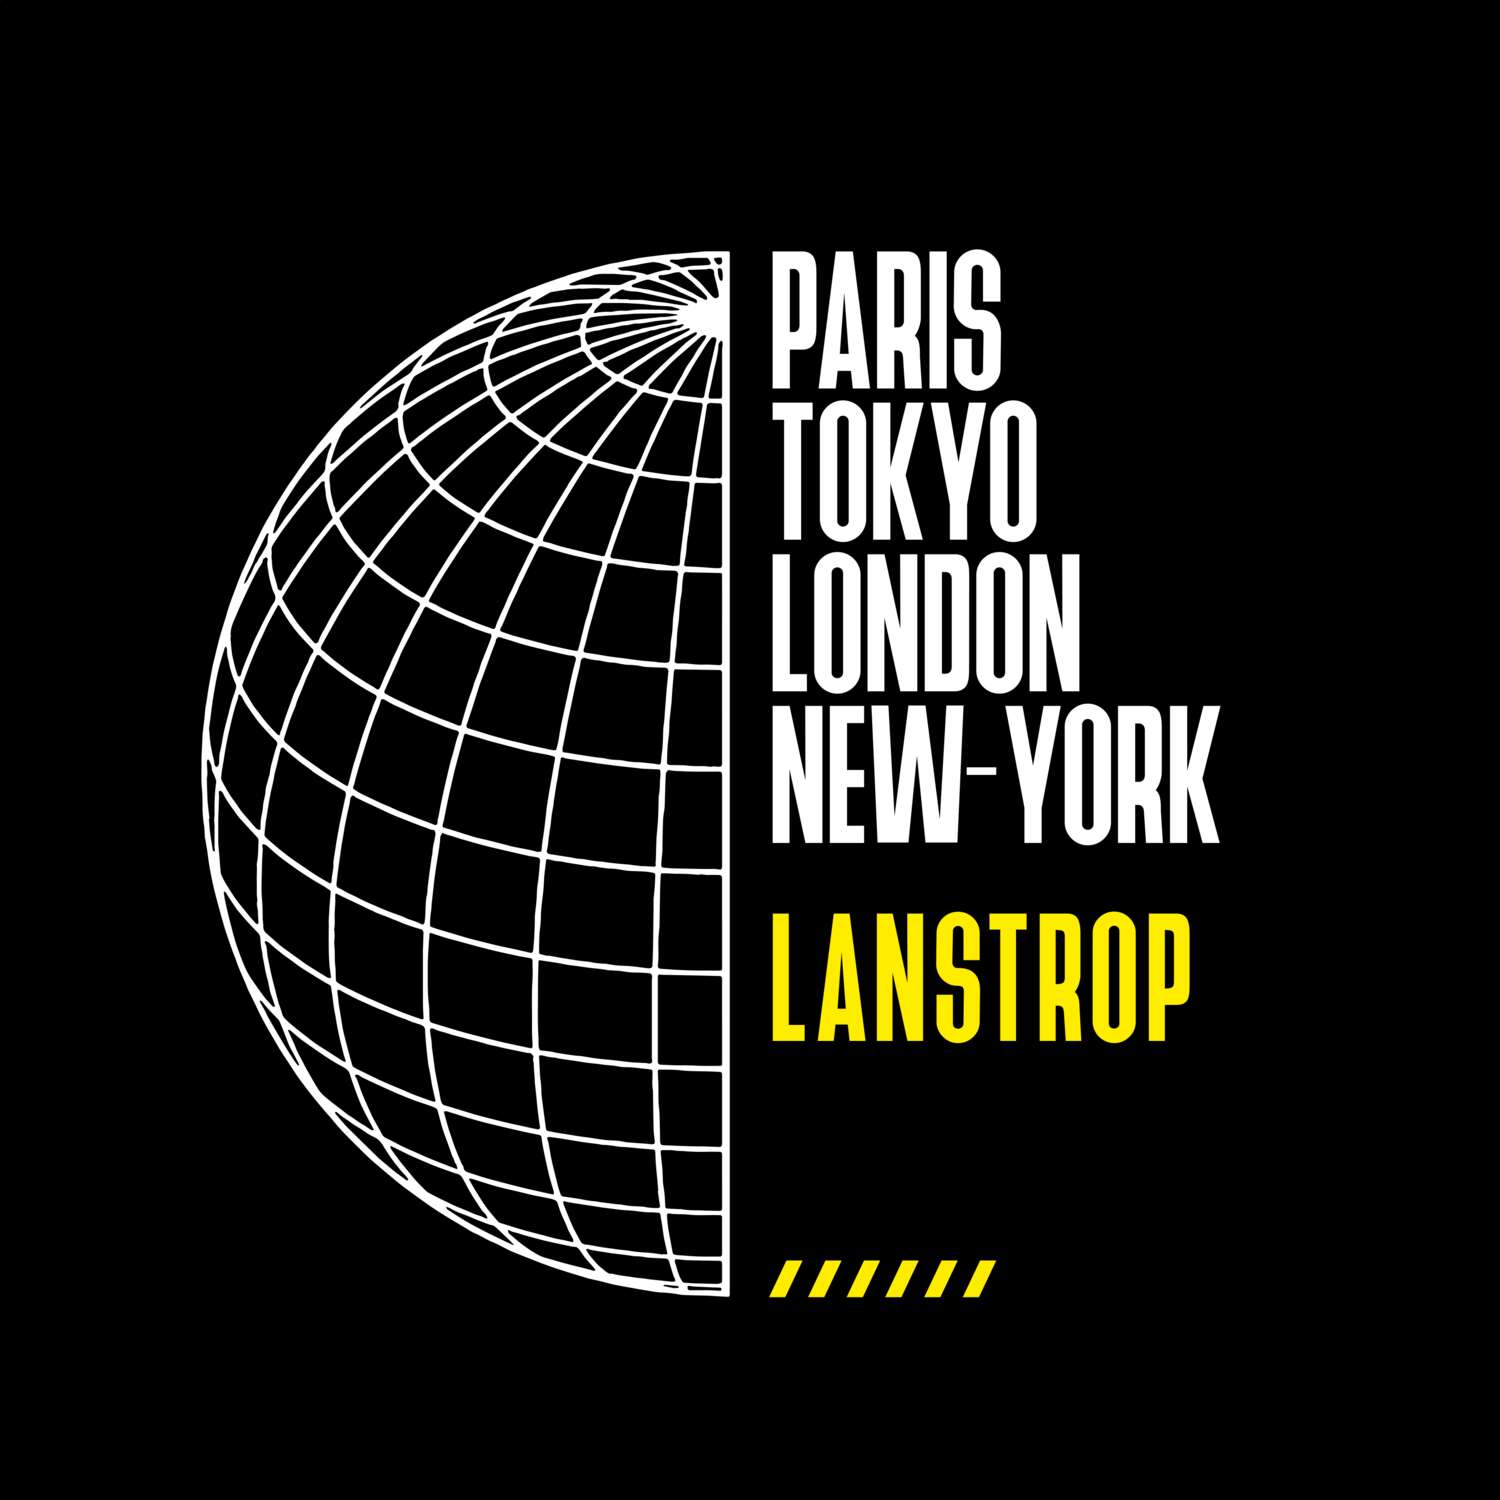 Lanstrop T-Shirt »Paris Tokyo London«